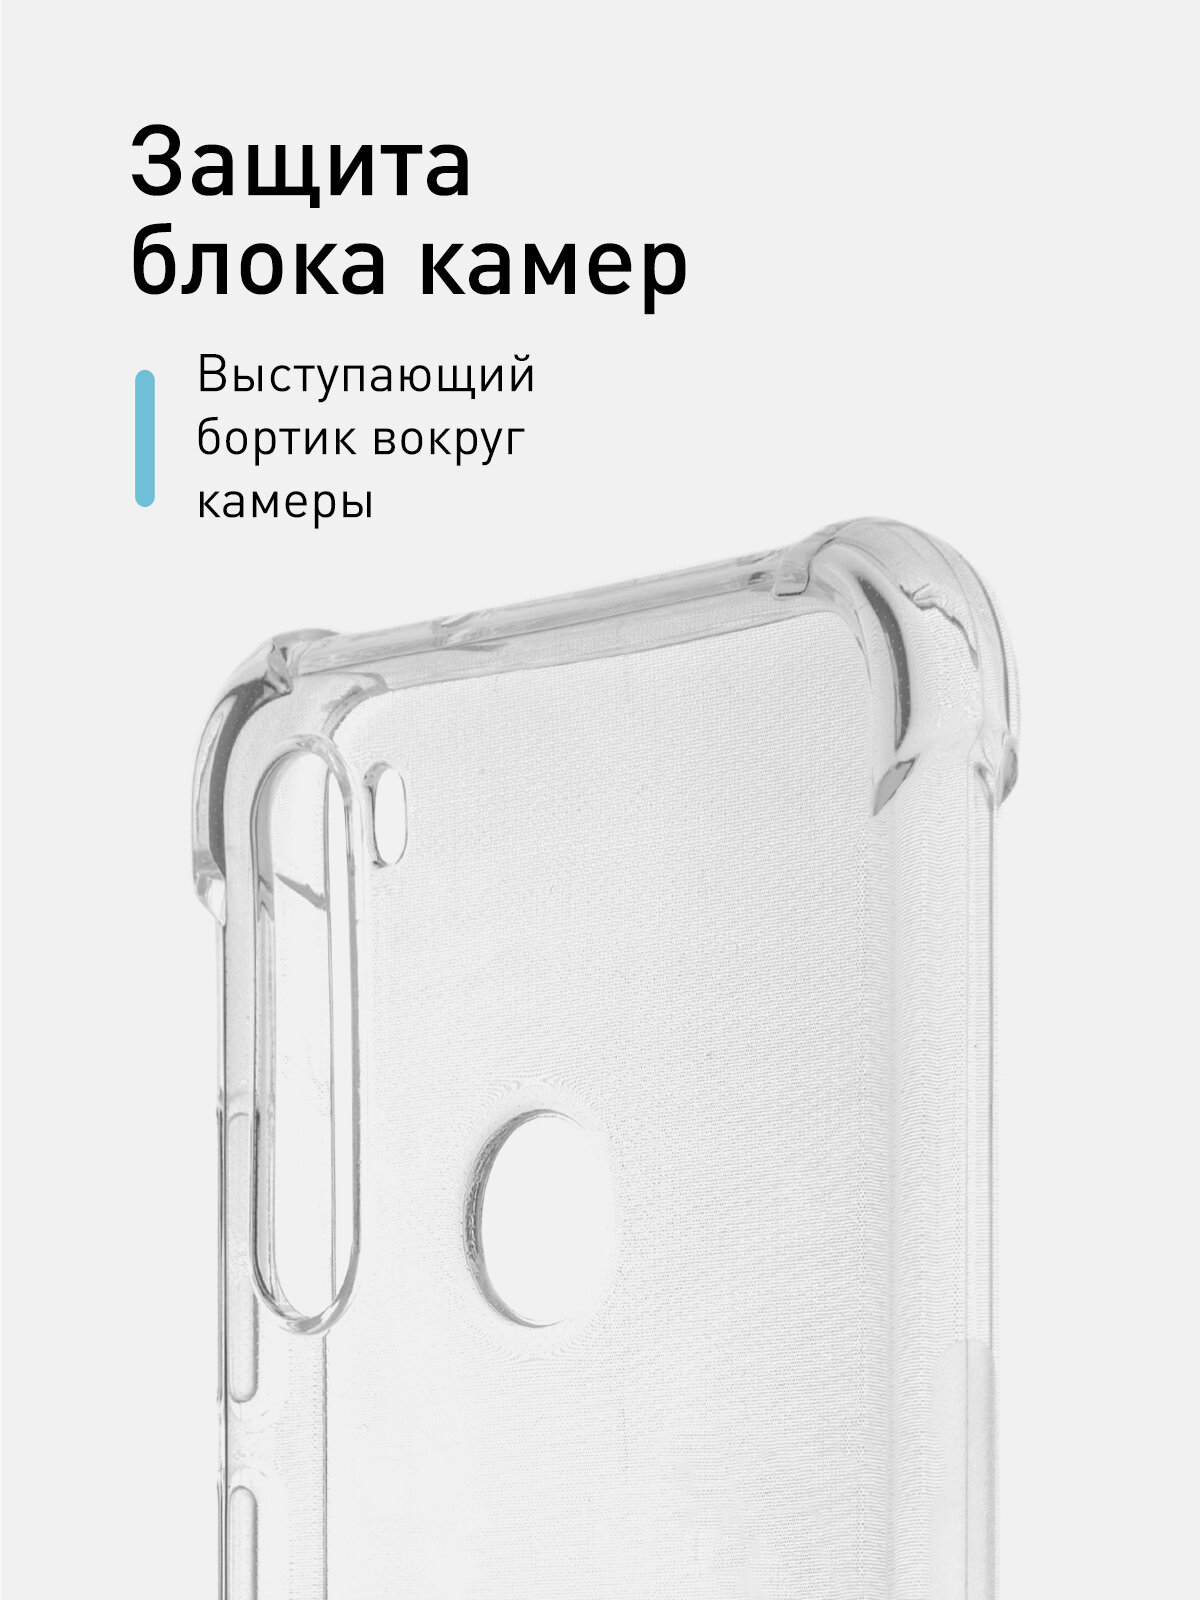 Противоударный чехол для Xiaomi Redmi Note 8 (Сяоми Редми Ноут 8, Ксиаоми) усиленные углы, силиконовый с бортиком (защитой) камер ROSCO, прозрачный